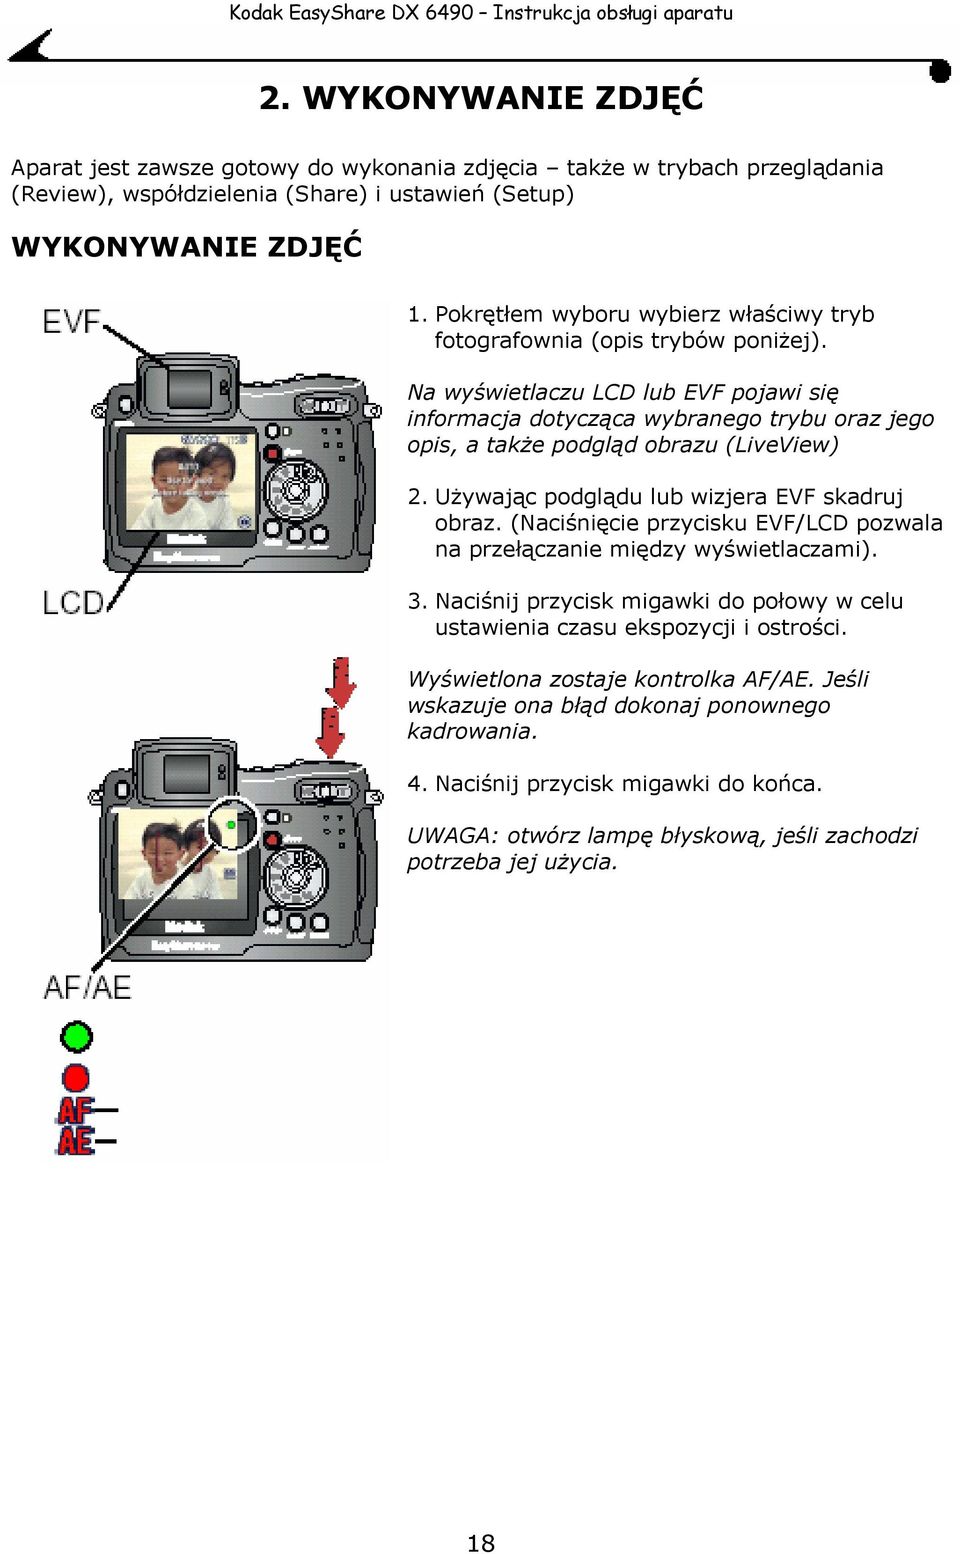 Na wyświetlaczu LCD lub EVF pojawi się informacja dotycząca wybranego trybu oraz jego opis, a także podgląd obrazu (LiveView) Używając podglądu lub wizjera EVF skadruj obraz.